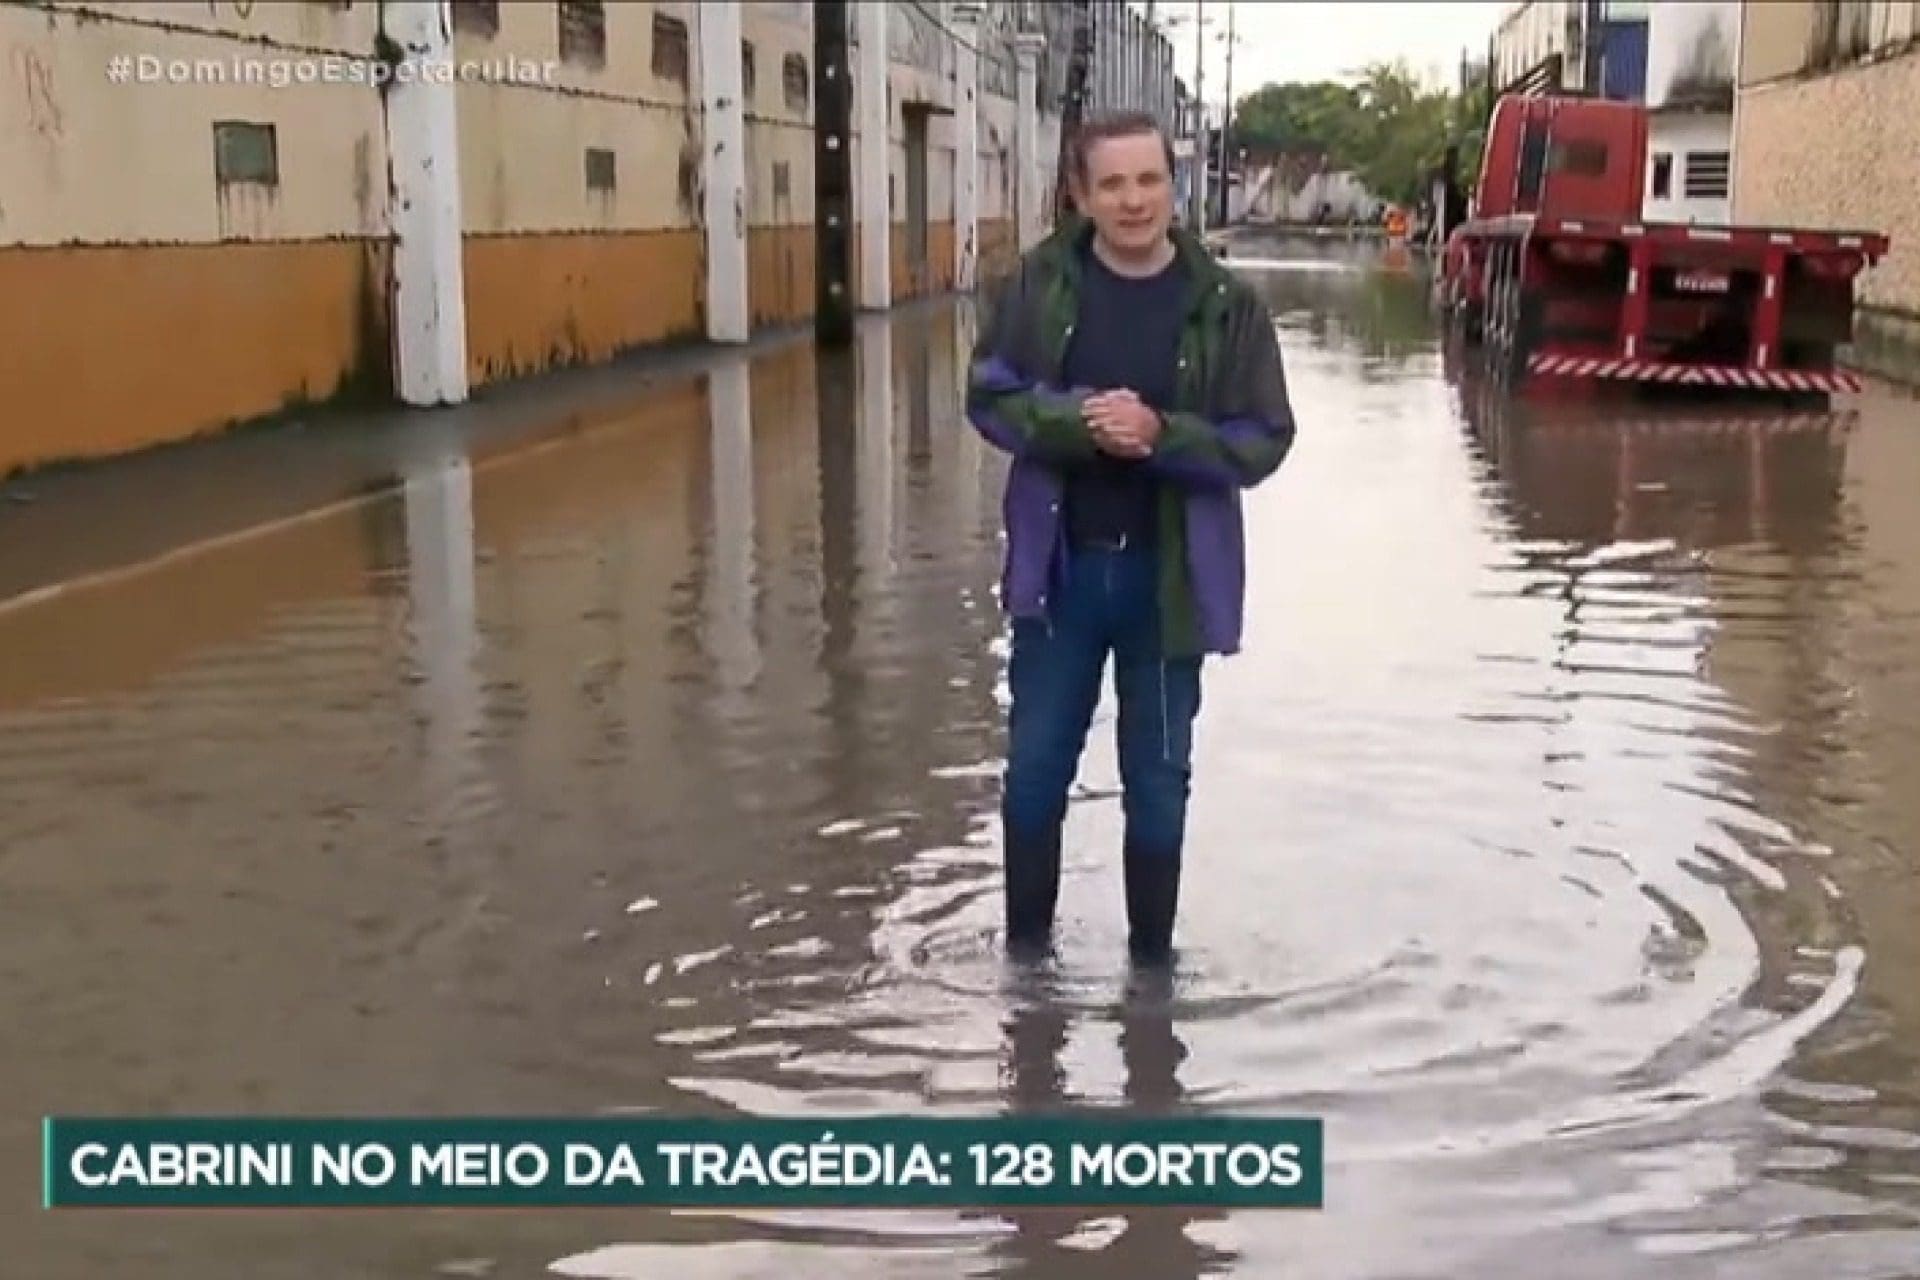 Drama das famílias vítimas das chuvas em Recife